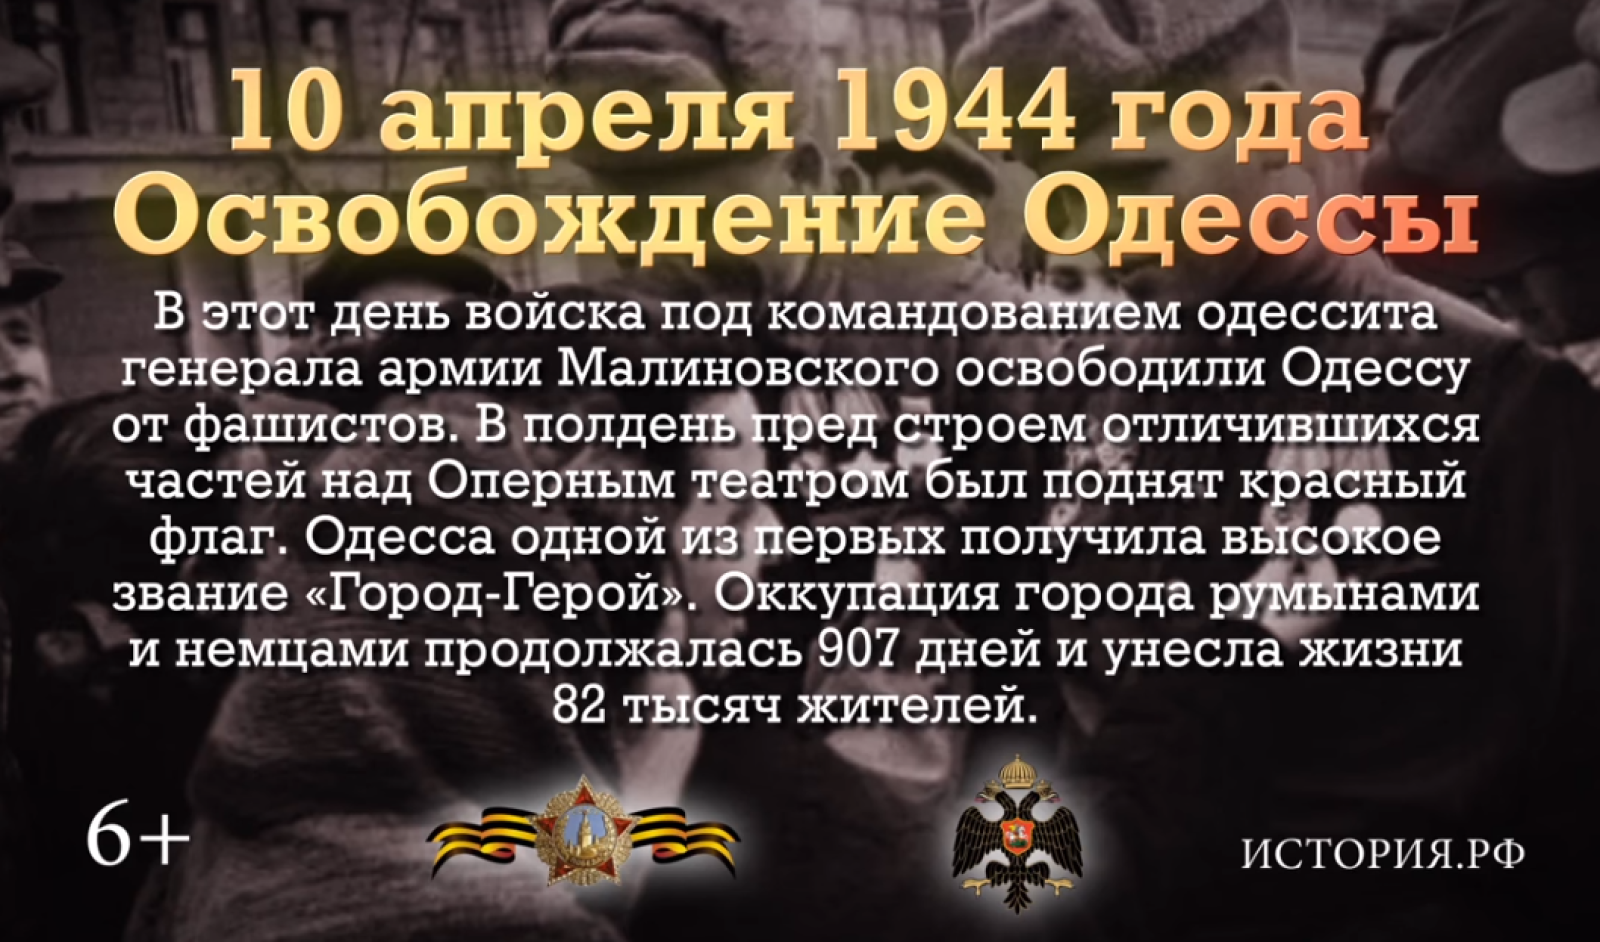 10 апреля 1944 года. 10 Апреля день освобождения Одессы от румынско-немецких войск. Одесса 10 апреля 1944 года. День освобождения Одессы от румынско-немецких войск.. Освобождение Одессы от немецких захватчиков в 1944 году.